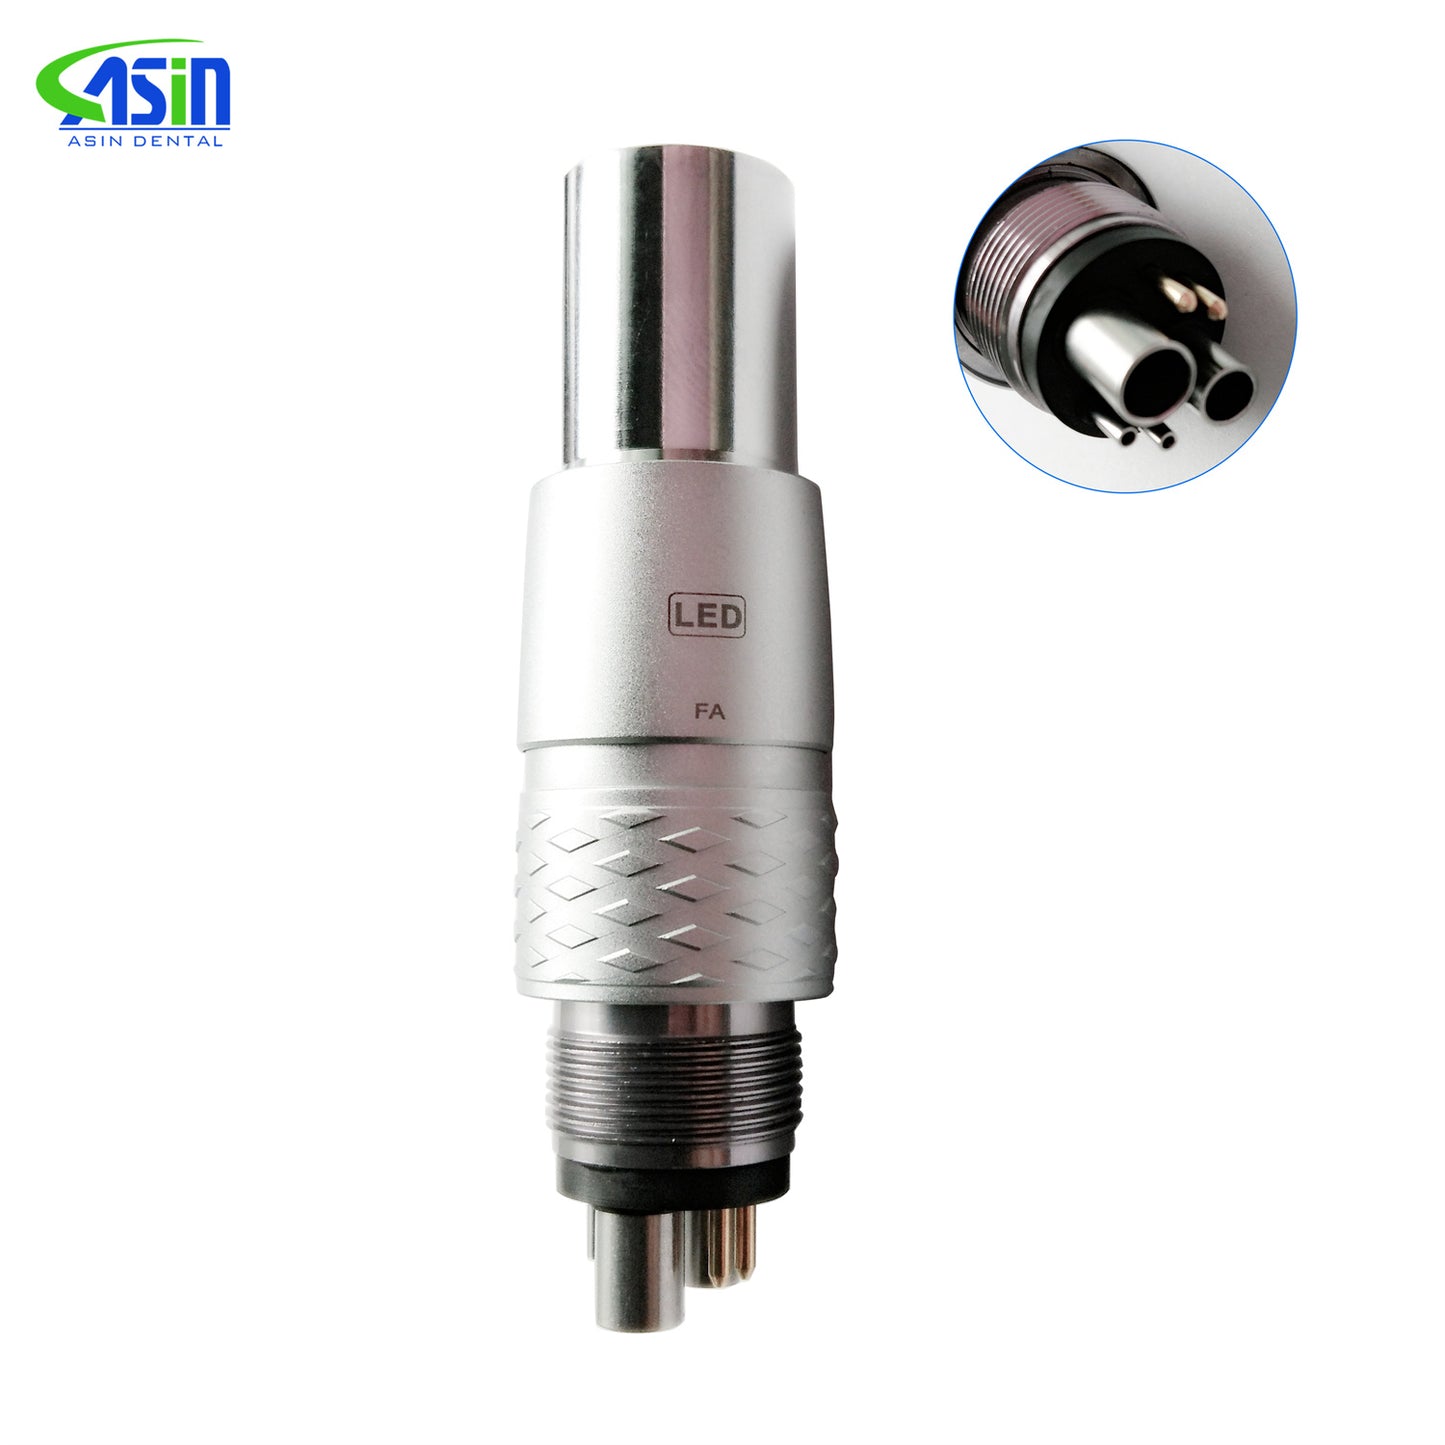 Deasin Dental 6H Quick Coupler Coupling N/S/K Fit Fiber Optic LED Handpiece Dentistry Other Tools